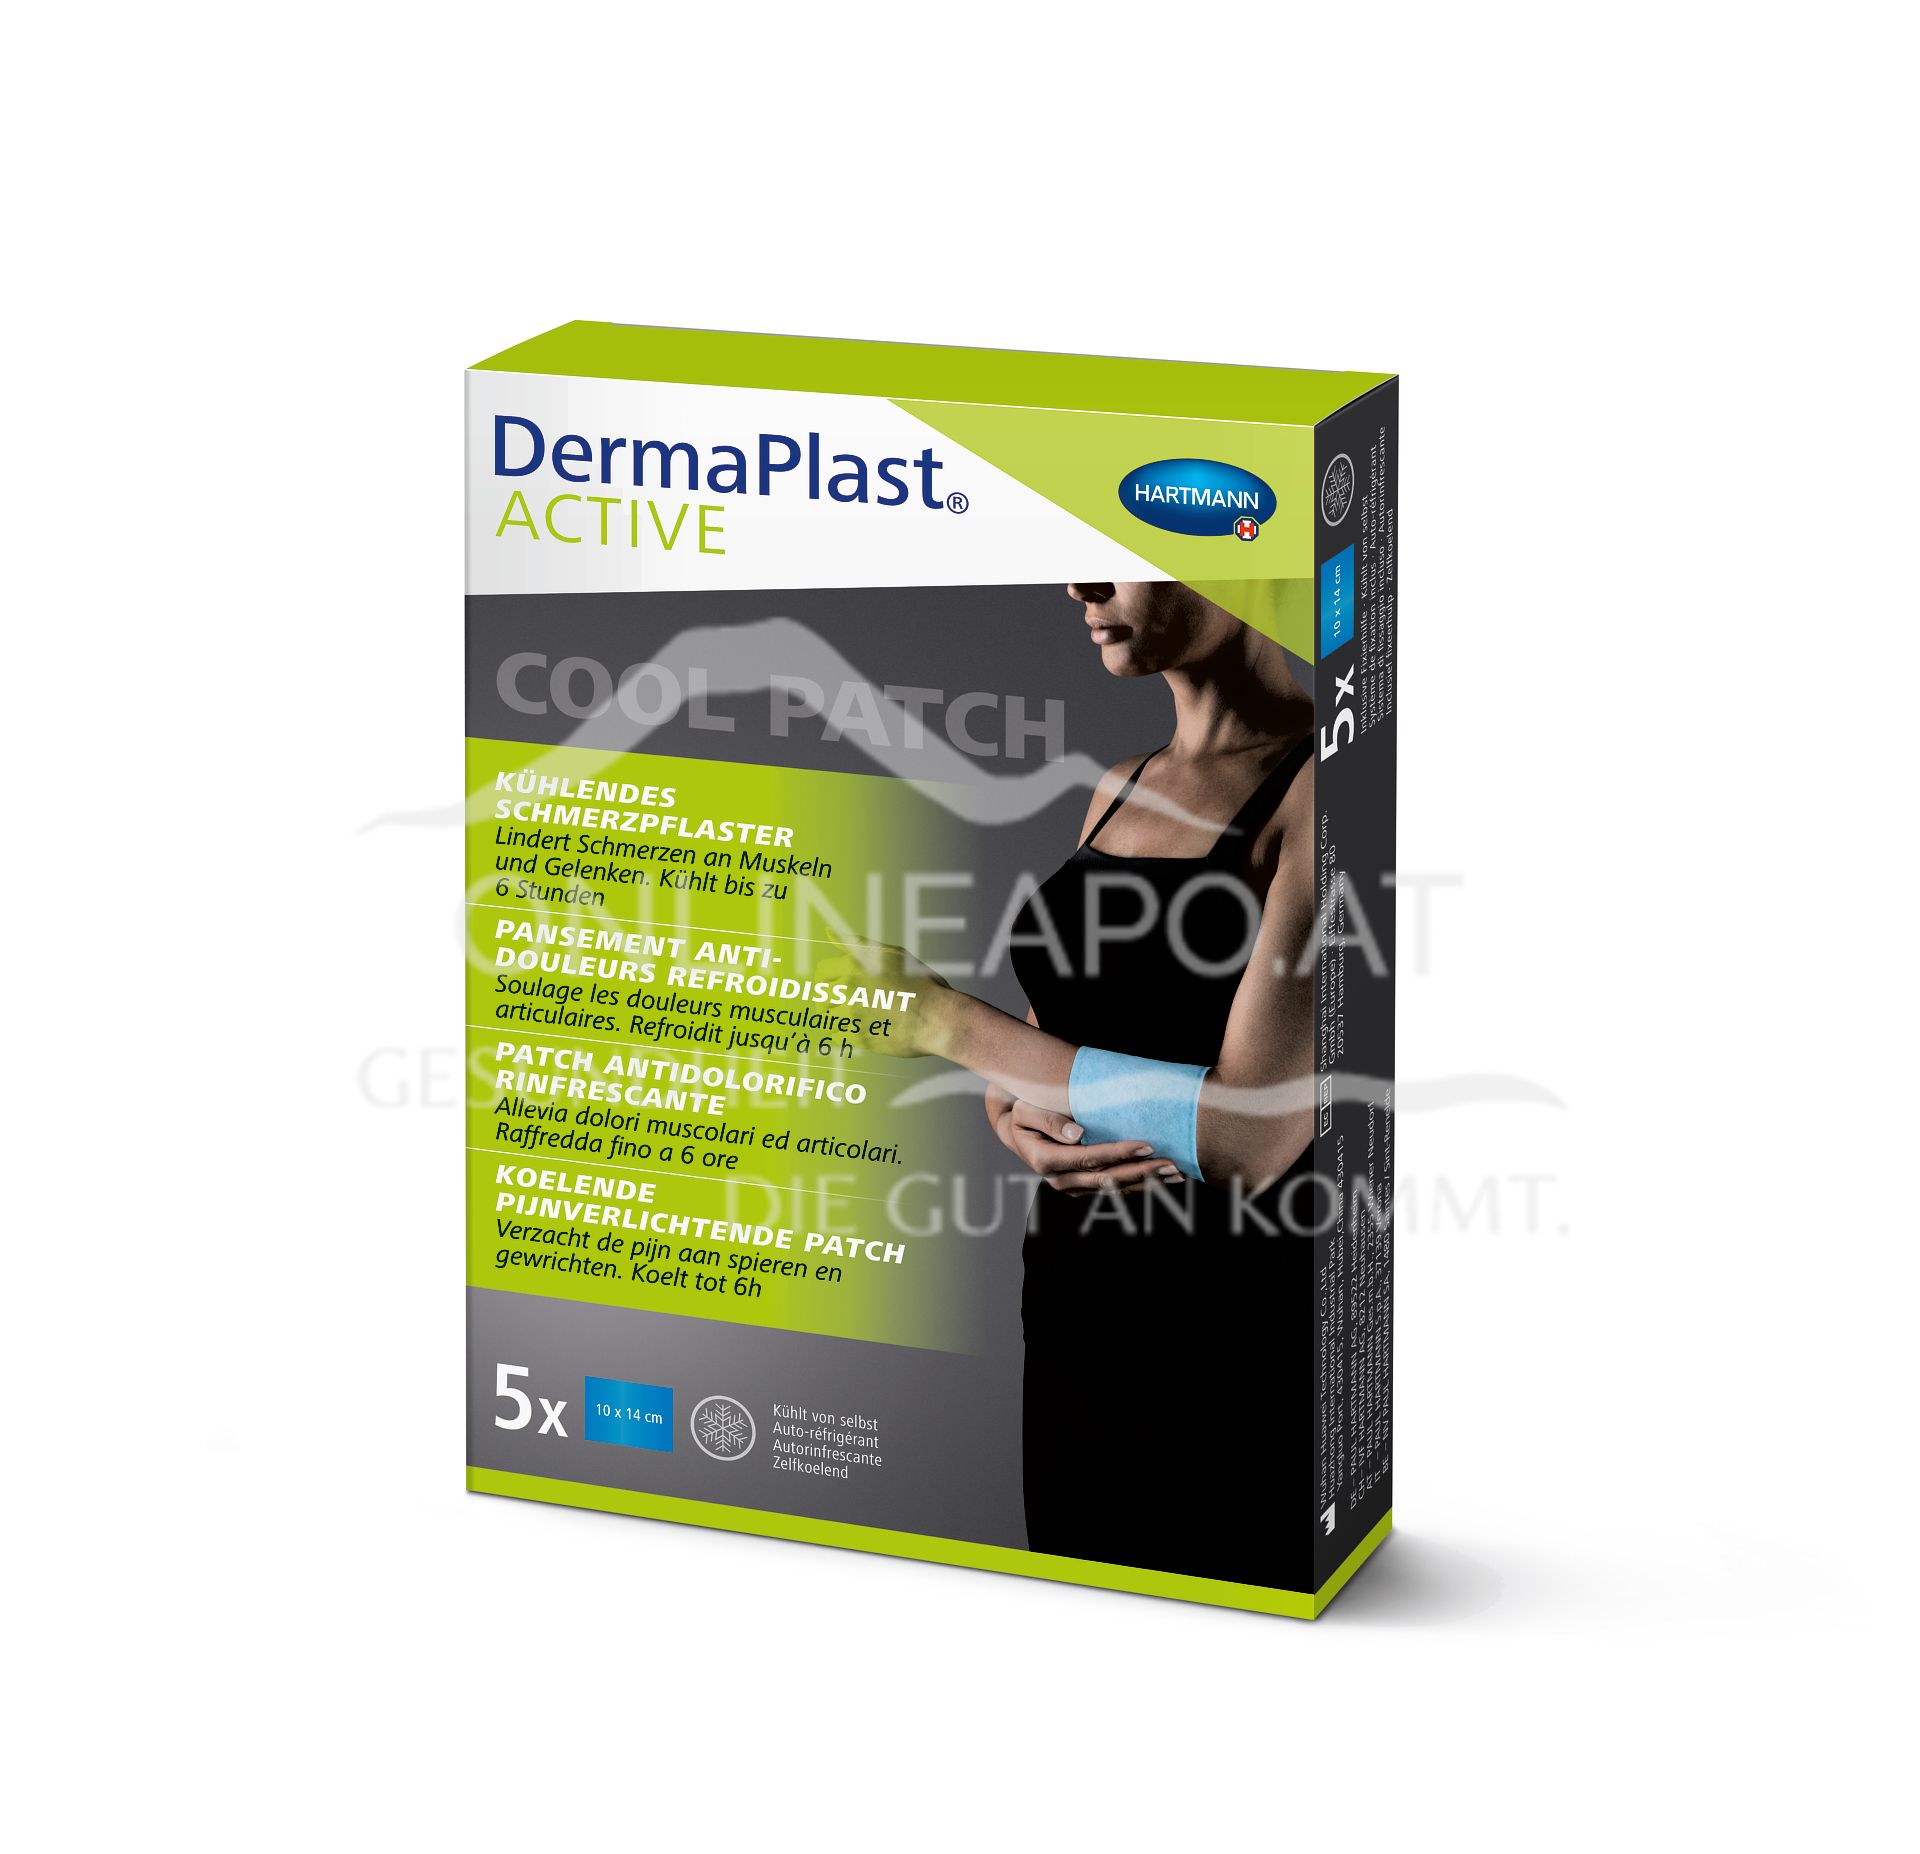 DermaPlast® ACTIVE Cool Patch 10 x 14cm